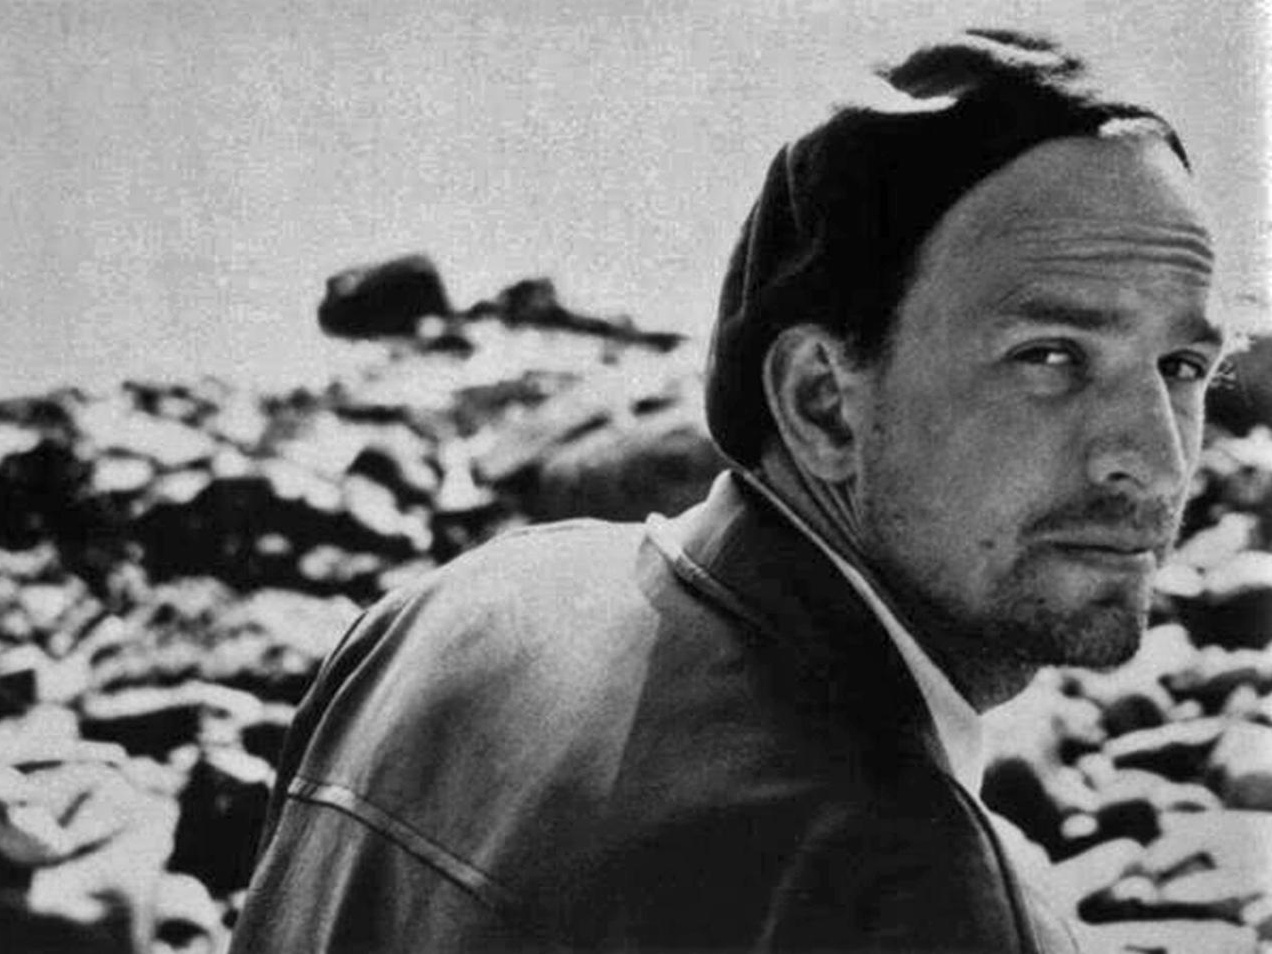 O sétimo selo, de Bergman: resumo e análise do filme - Cultura Genial